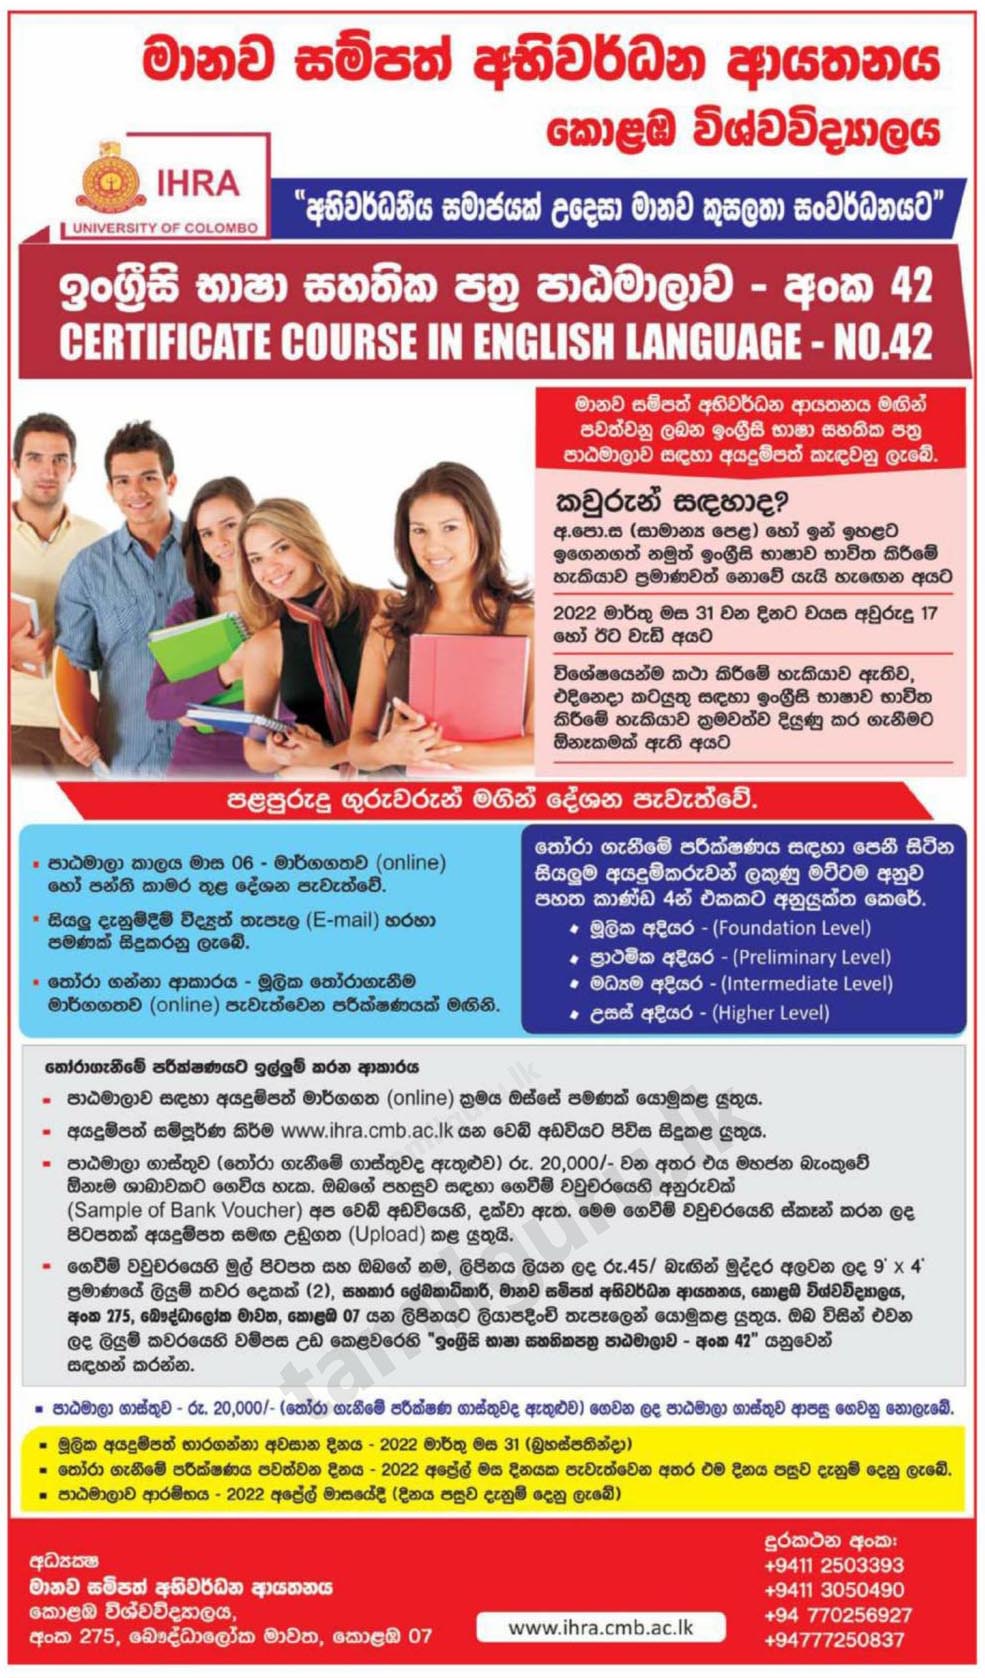 Certificate Course in English Language 2022 (No 42) - University of Colombo / ඉංග්‍රීසි භාෂා සහතිකපත්‍ර පාඨමාලාව - කොළඹ විශ්වවිද්‍යාලය